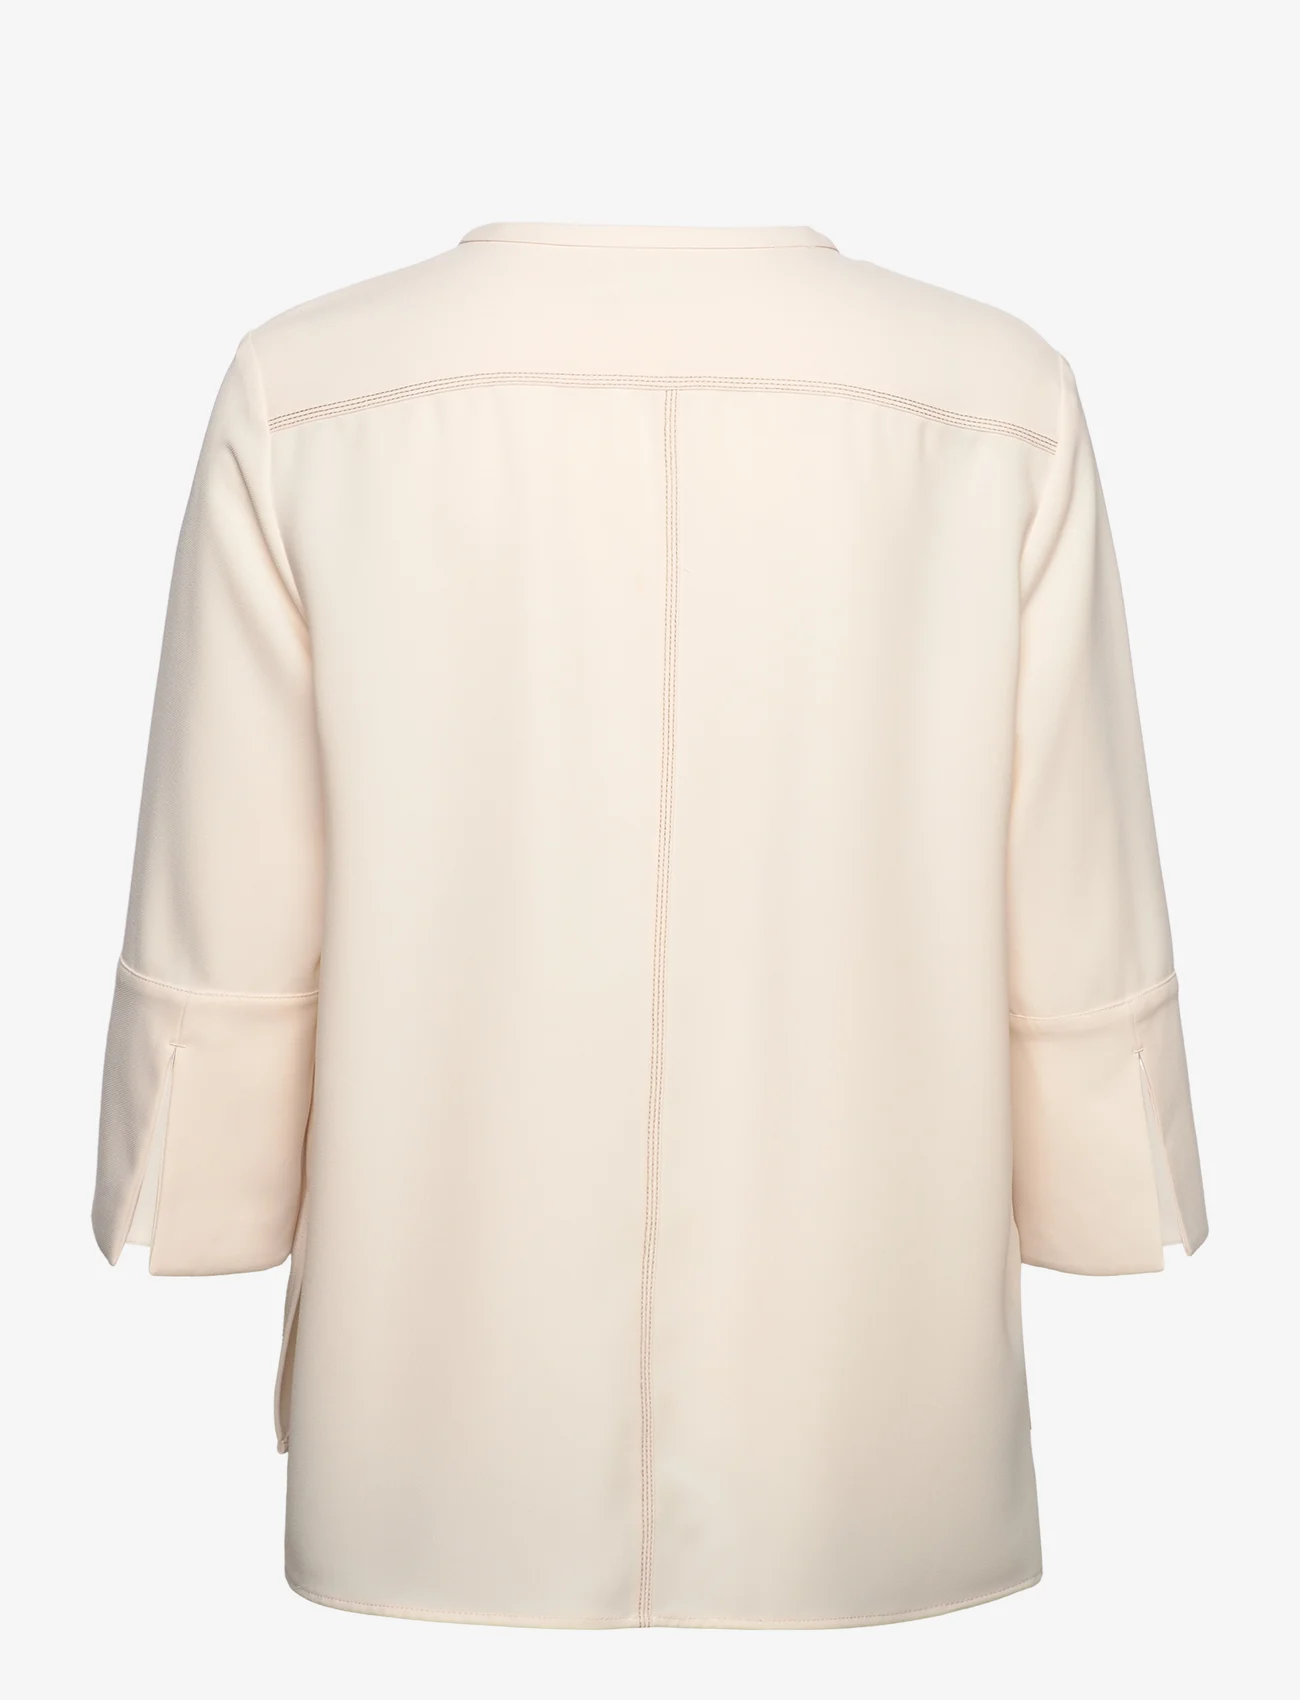 Calvin Klein - SUSTAINABLE TWILL  BLOUSE - bluzki z długimi rękawami - seedpearl - 1